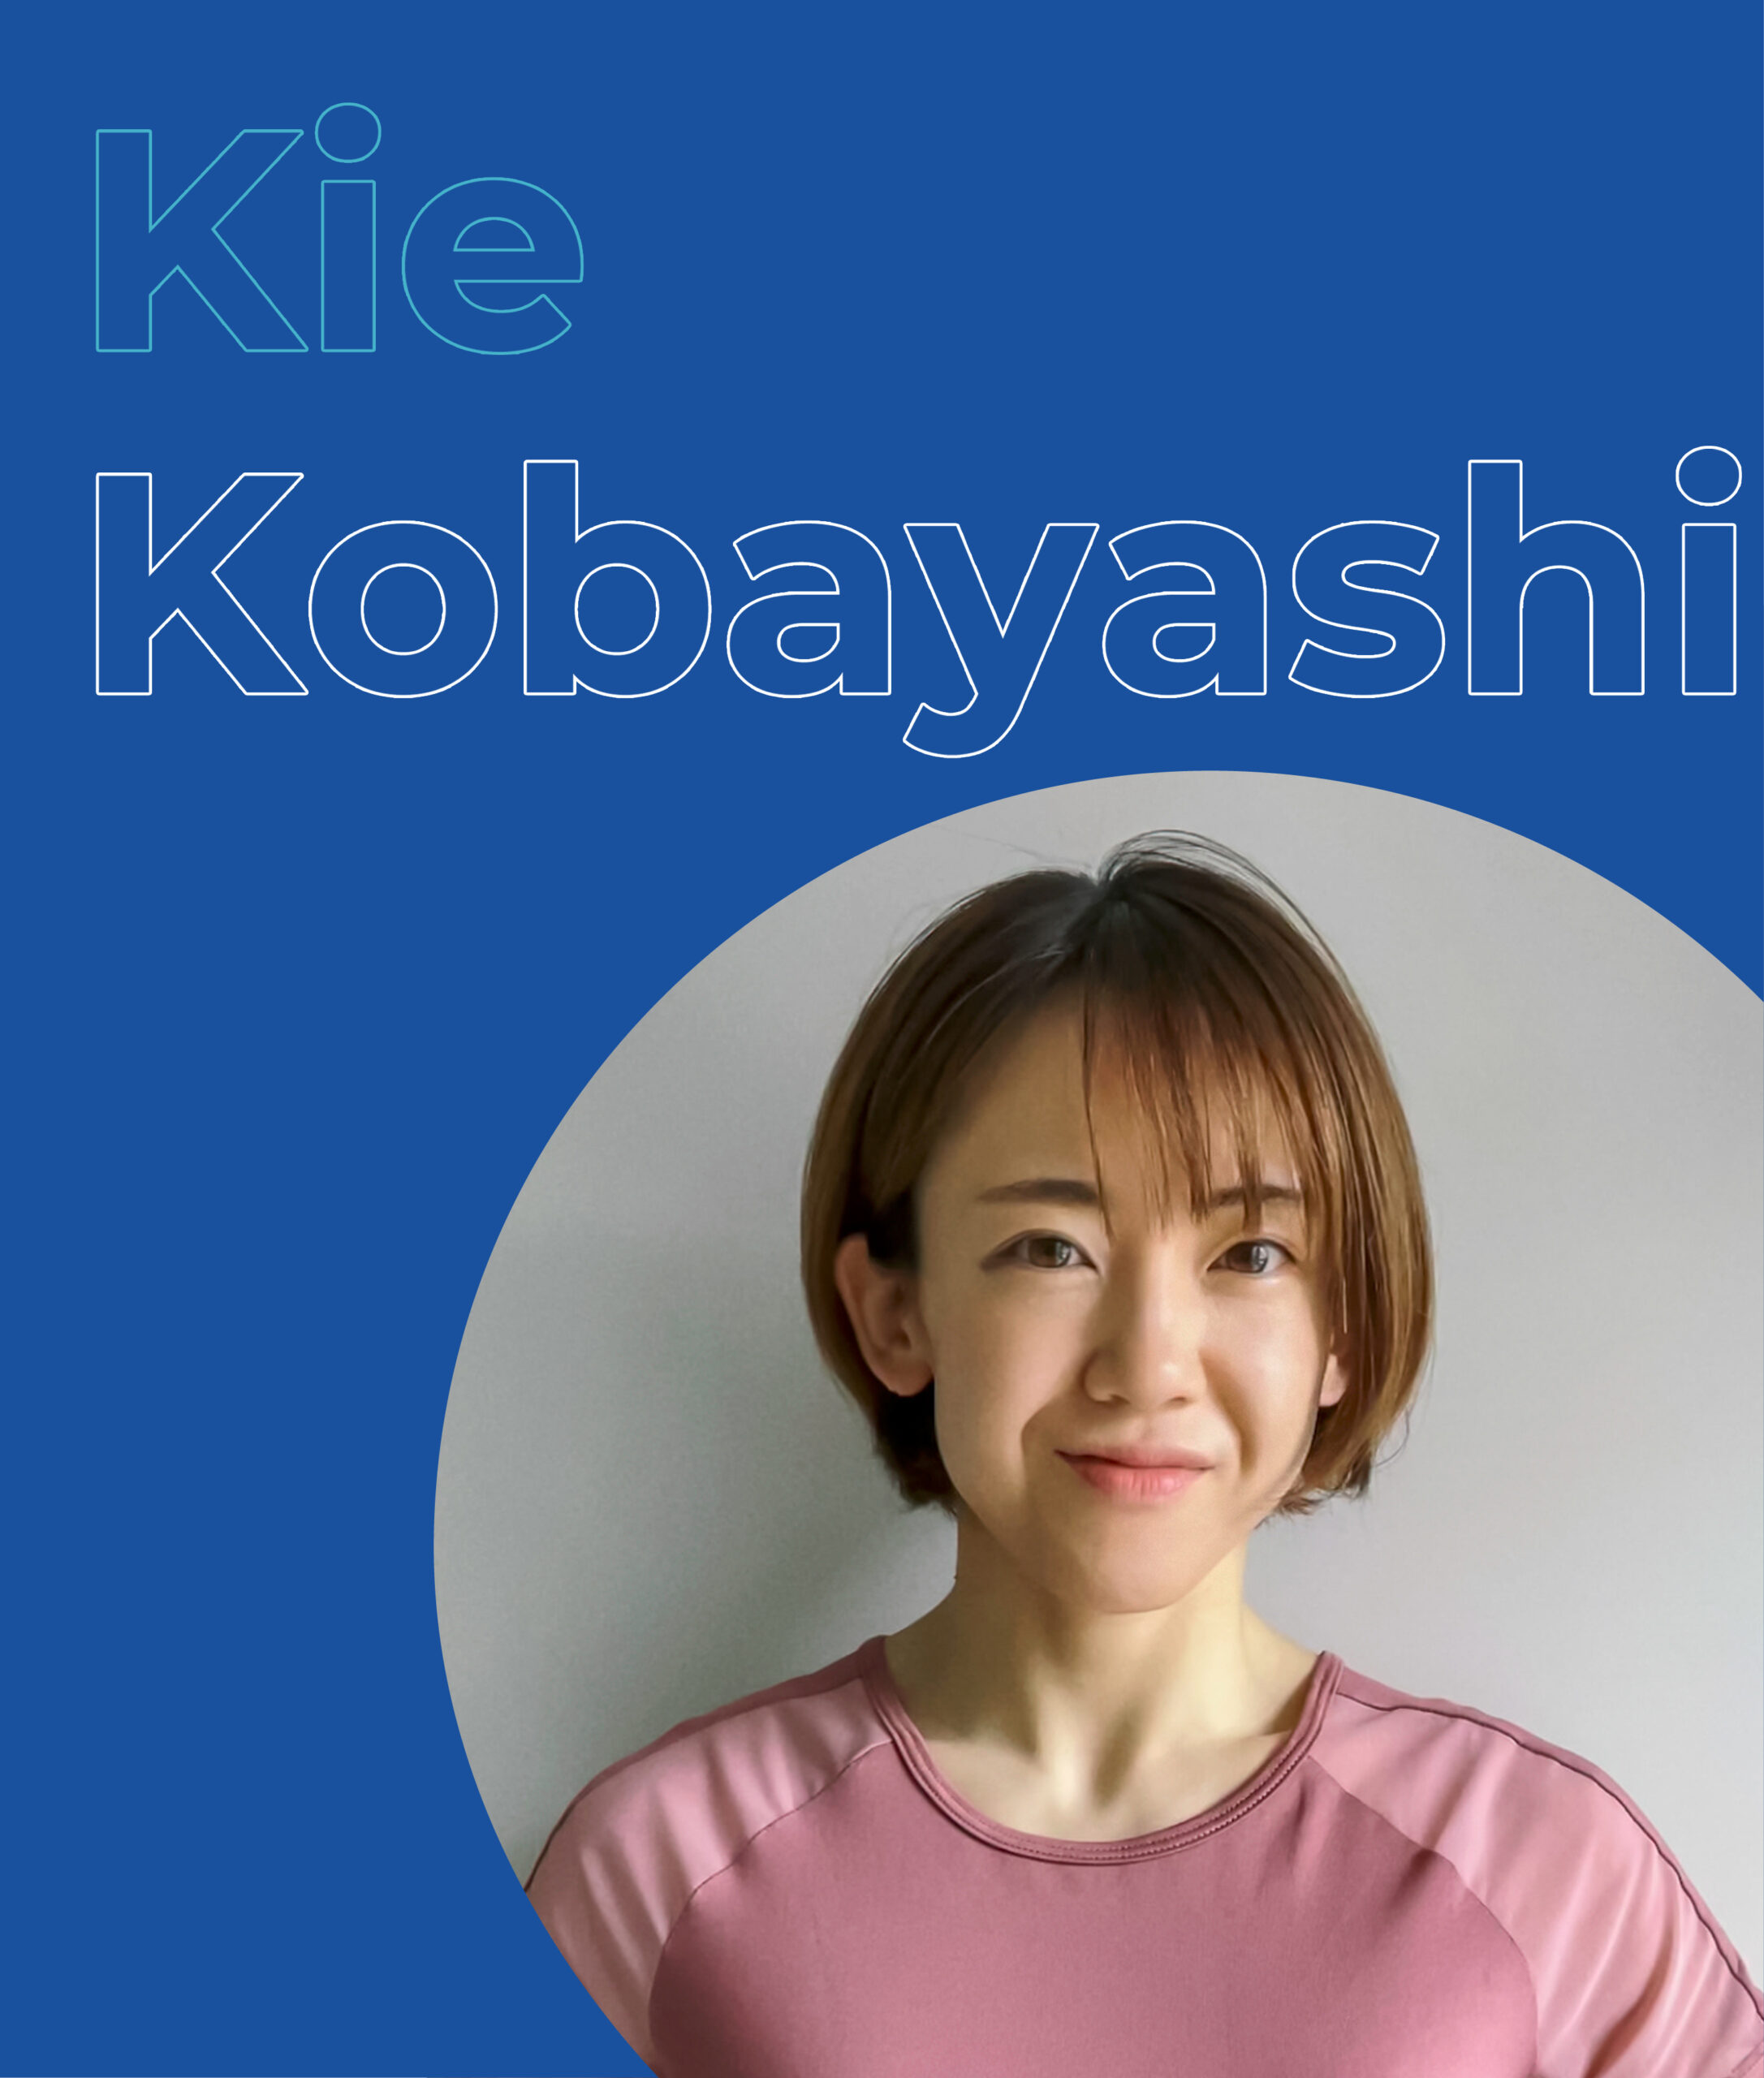 Kie Kobayashi